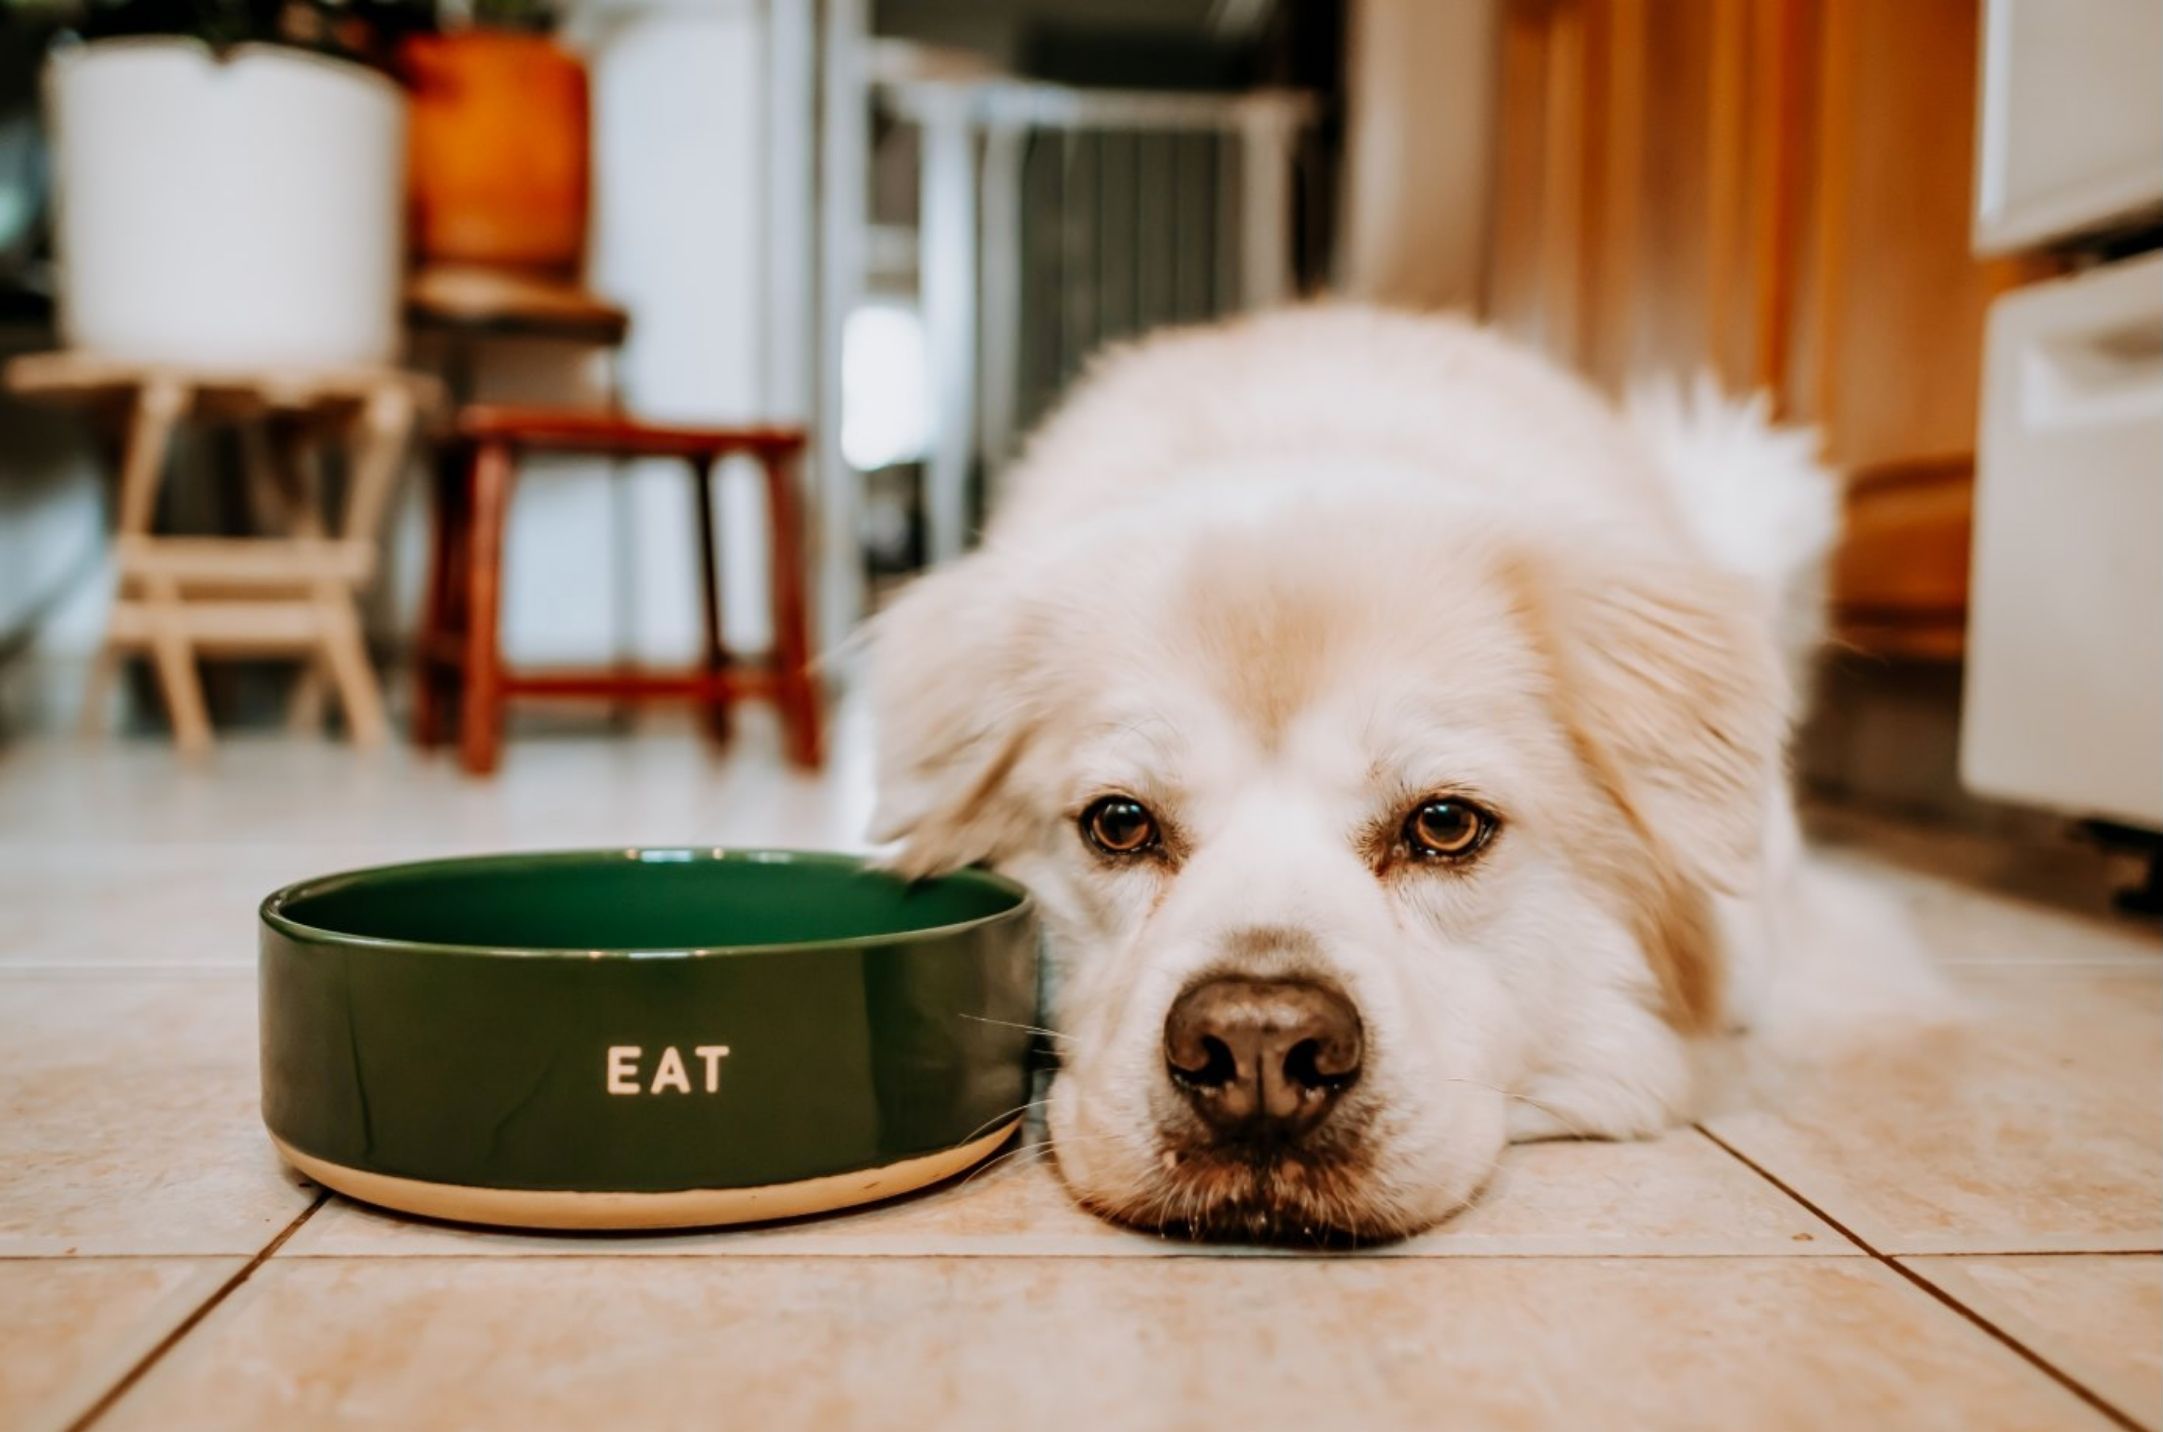 Dog next to food bowl